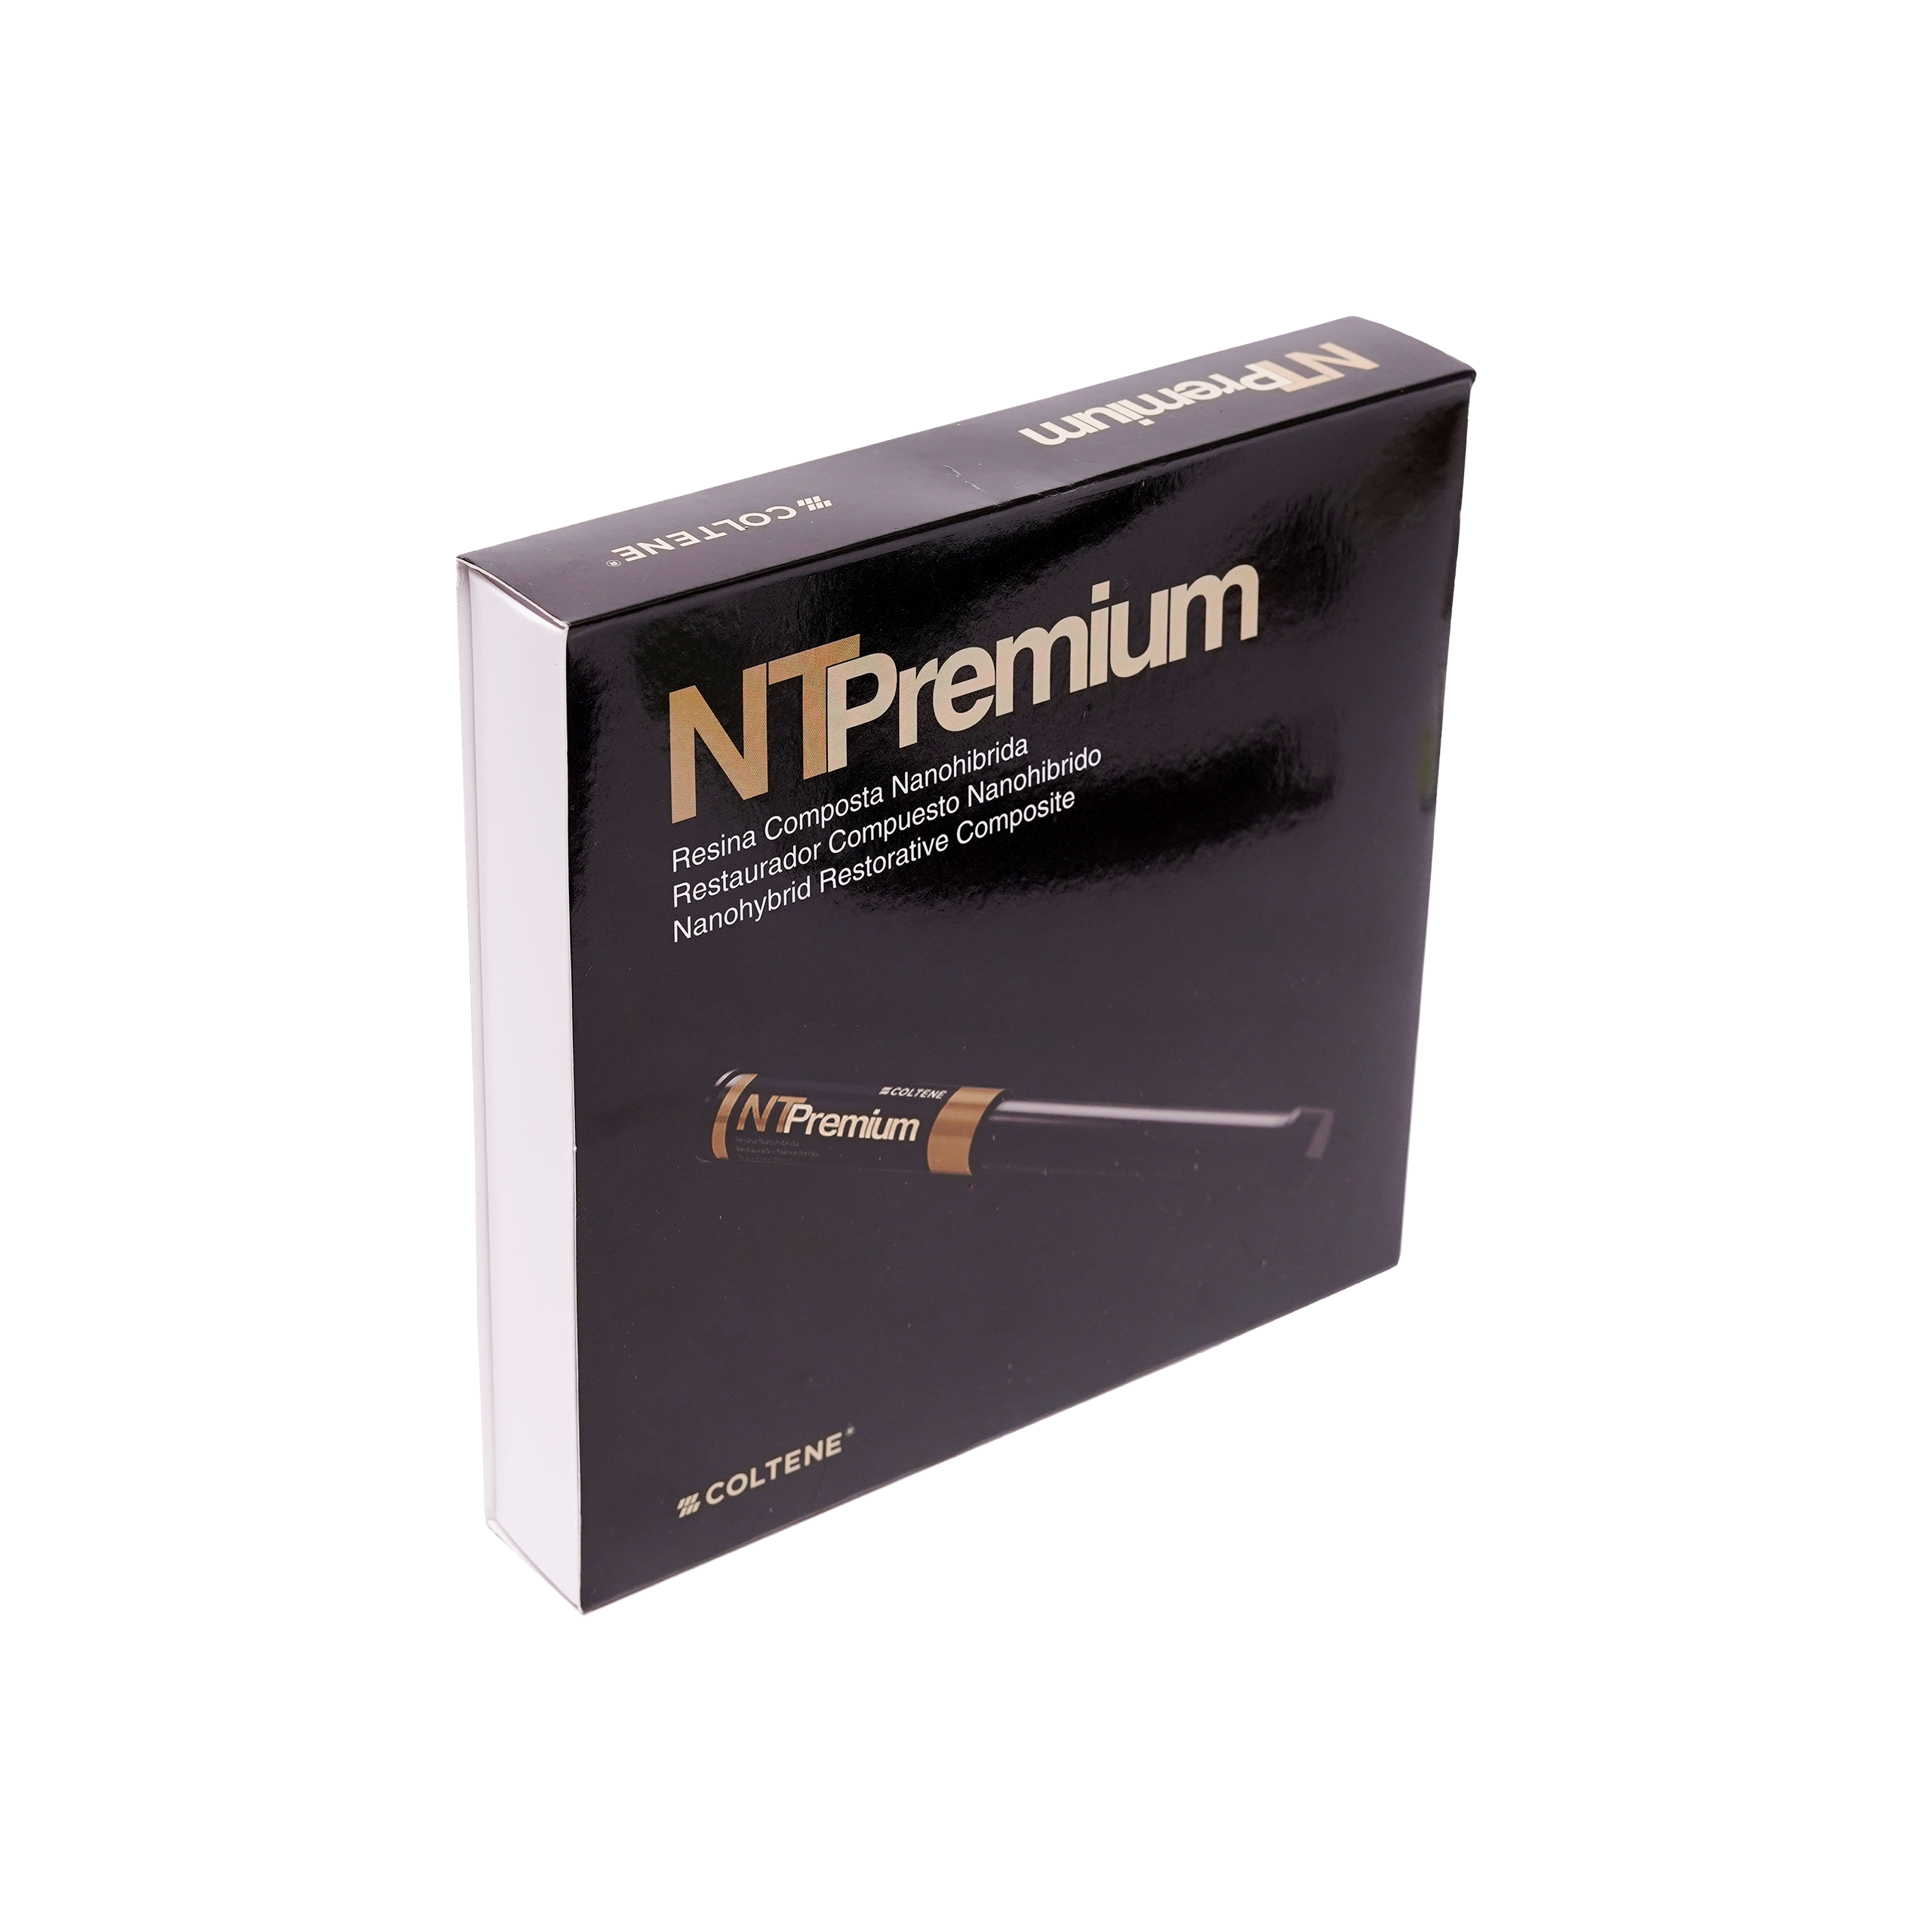 Coltene NT Premium Kit